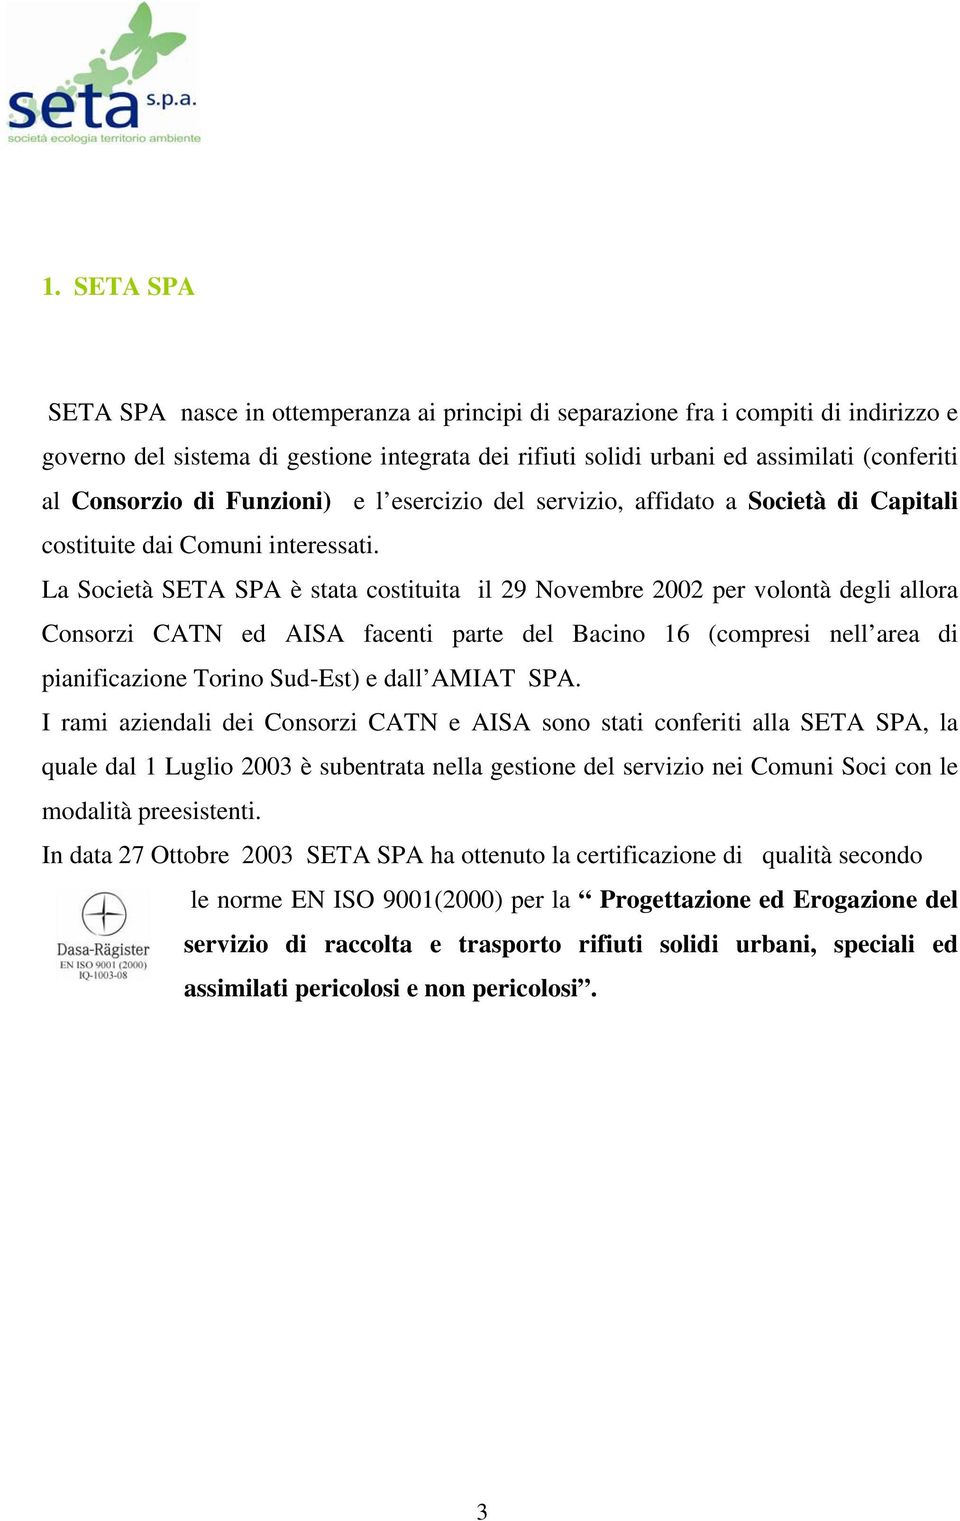 La Società SETA SPA è stata costituita il 29 Novembre 2002 per volontà degli allora Consorzi CATN ed AISA facenti parte del Bacino 16 (compresi nell area di pianificazione Torino Sud-Est) e dall